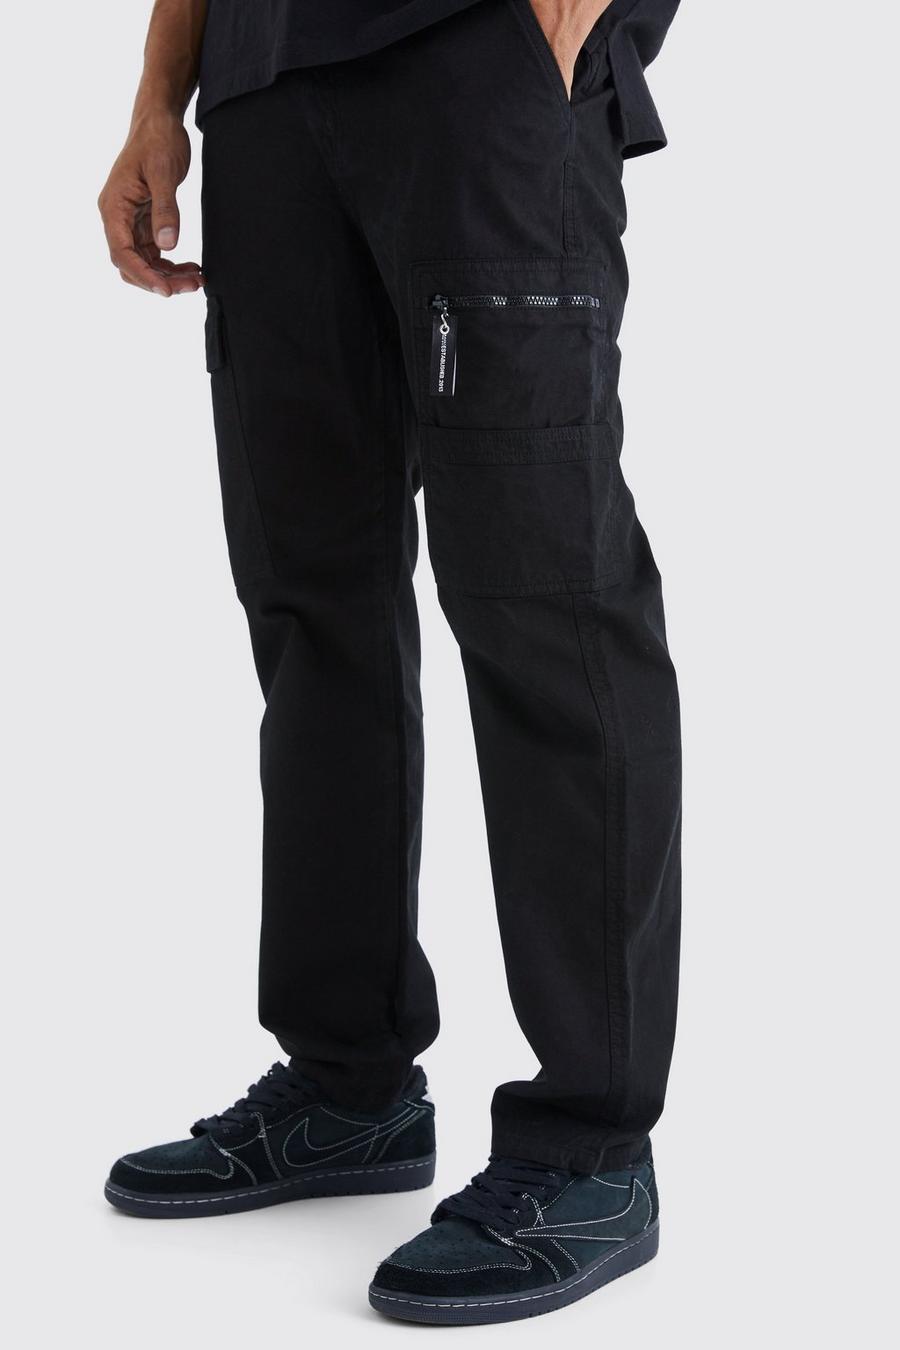 Pantaloni Cargo dritti con tiretto con zip e logo, Black